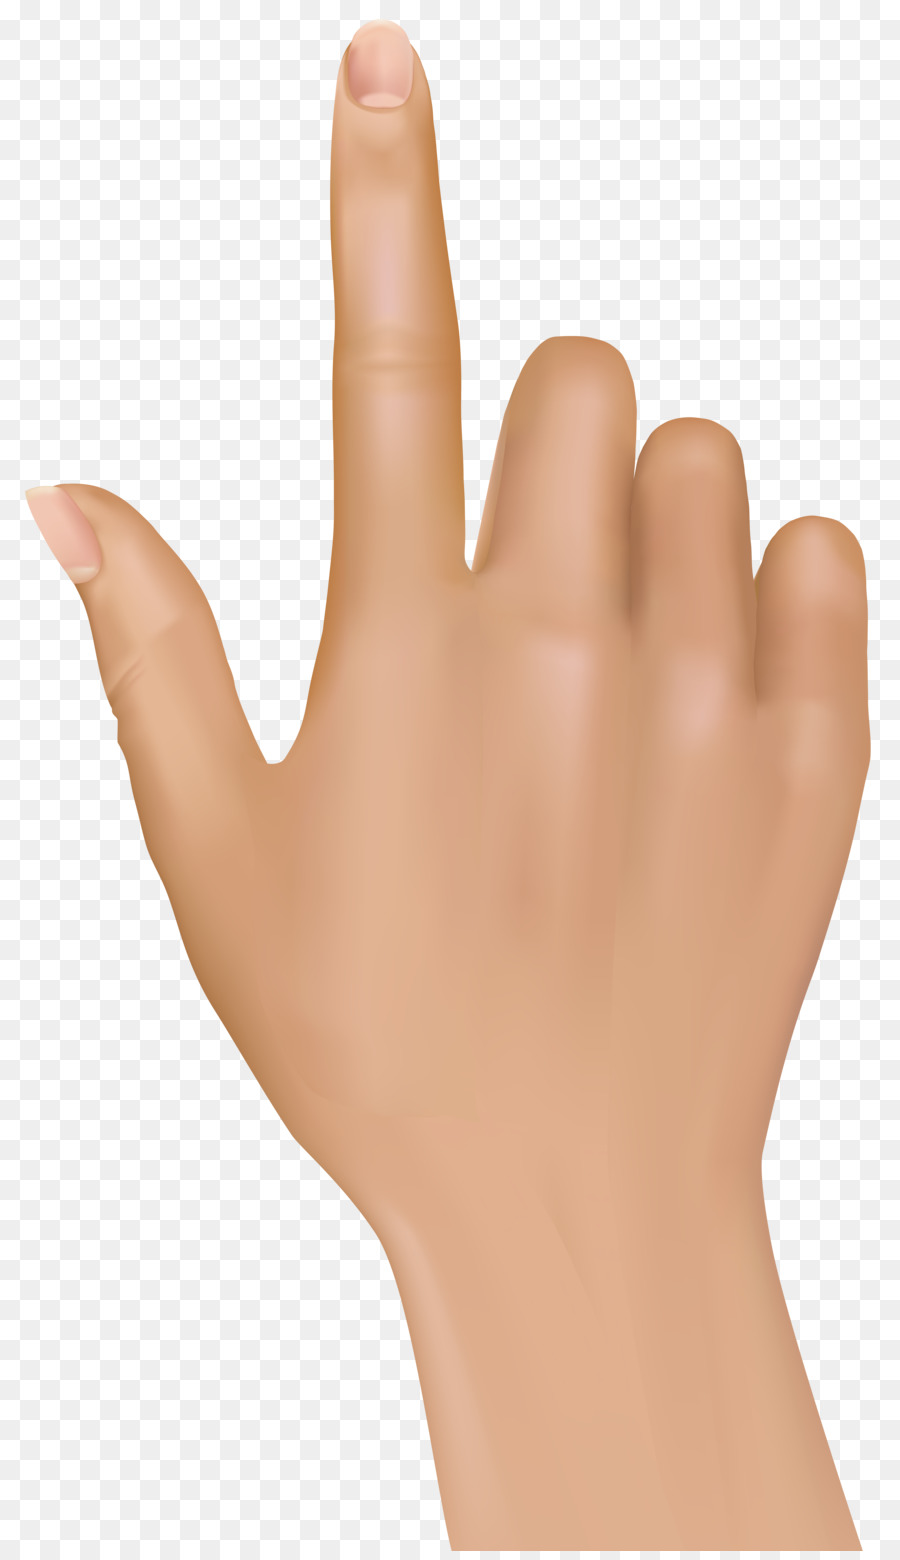 Index finger Hand Clip art - fingers png download - 4643*8000 - Free Transparent Finger png Download.